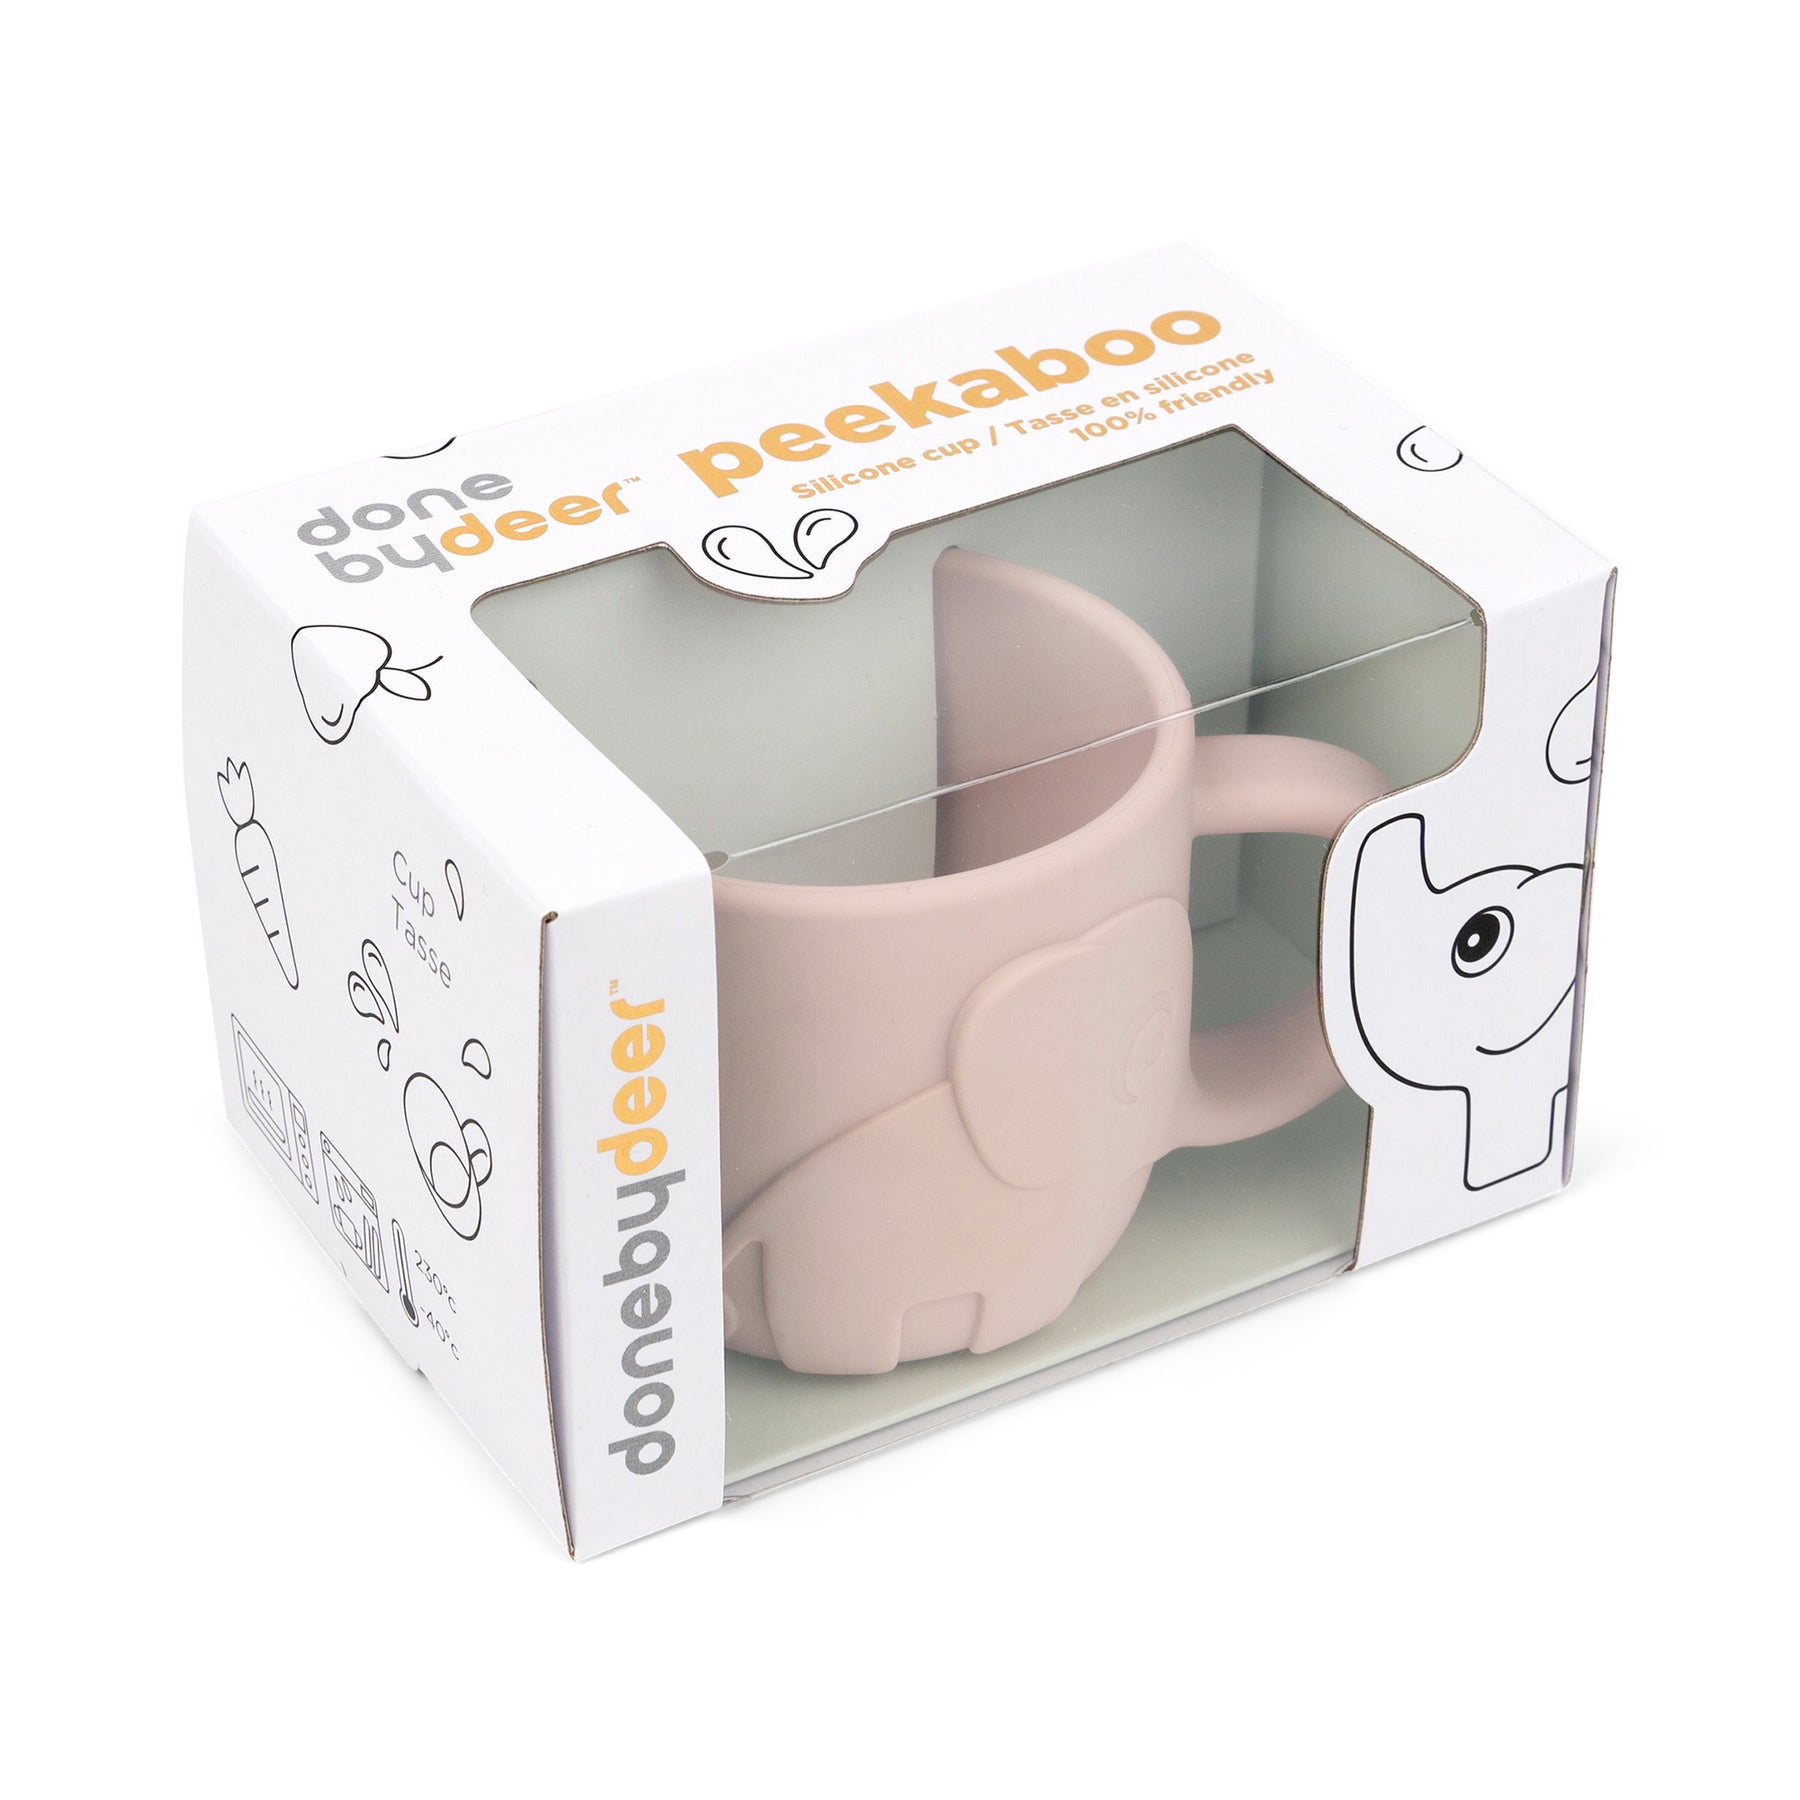 Peekaboo cup - Elphee - Powder - Packaging